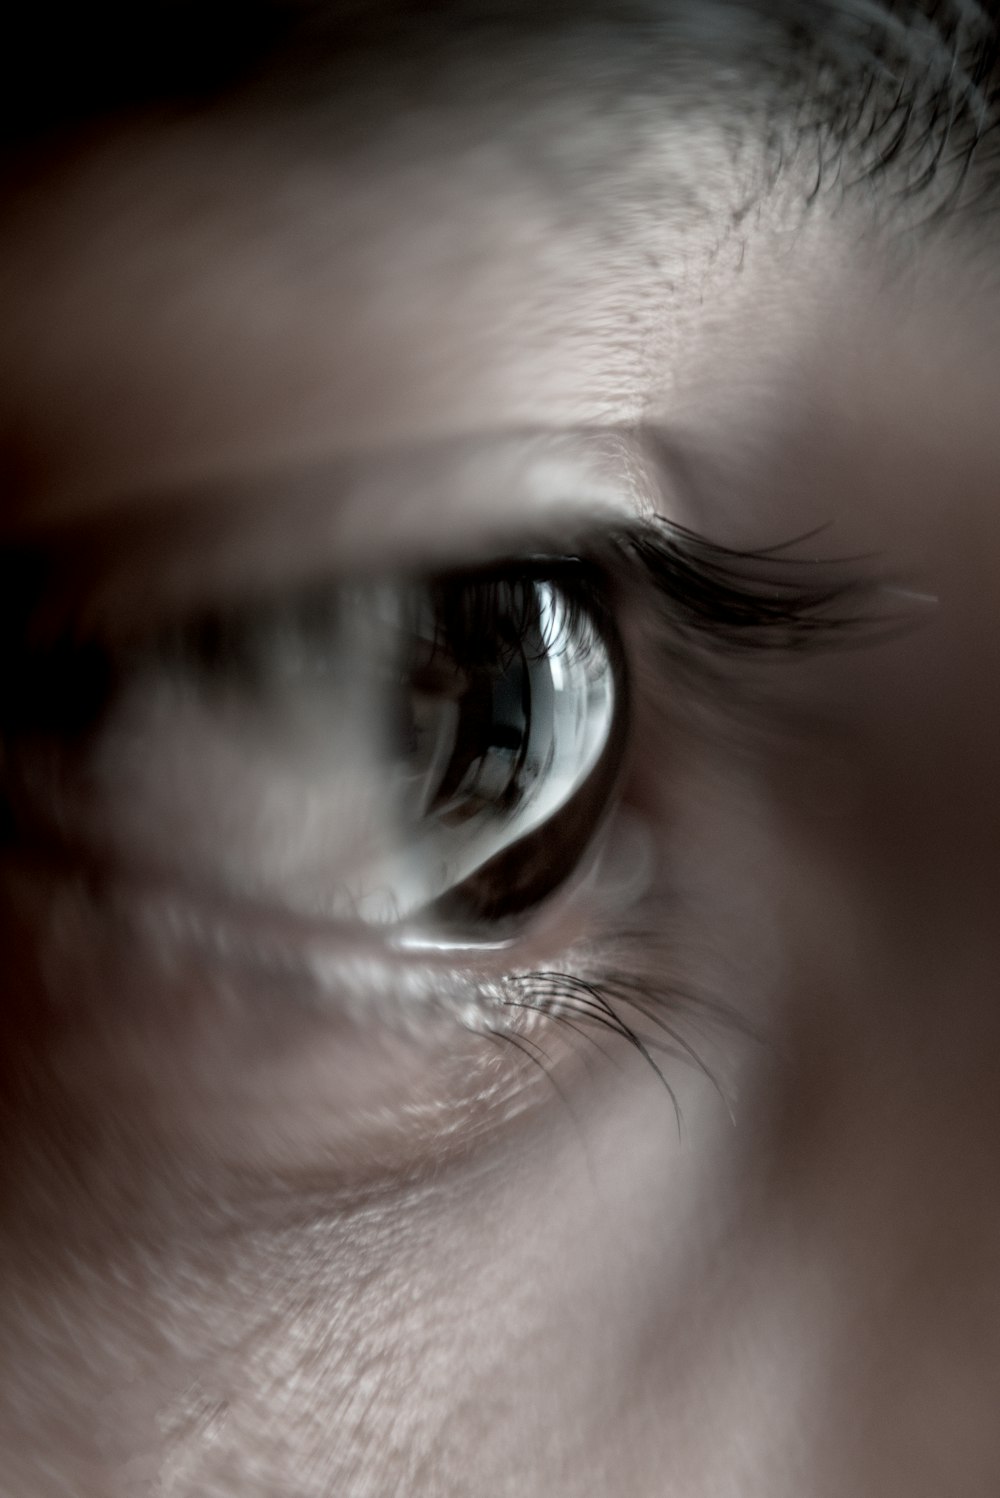 Human eye photo – Free Depression Image on Unsplash